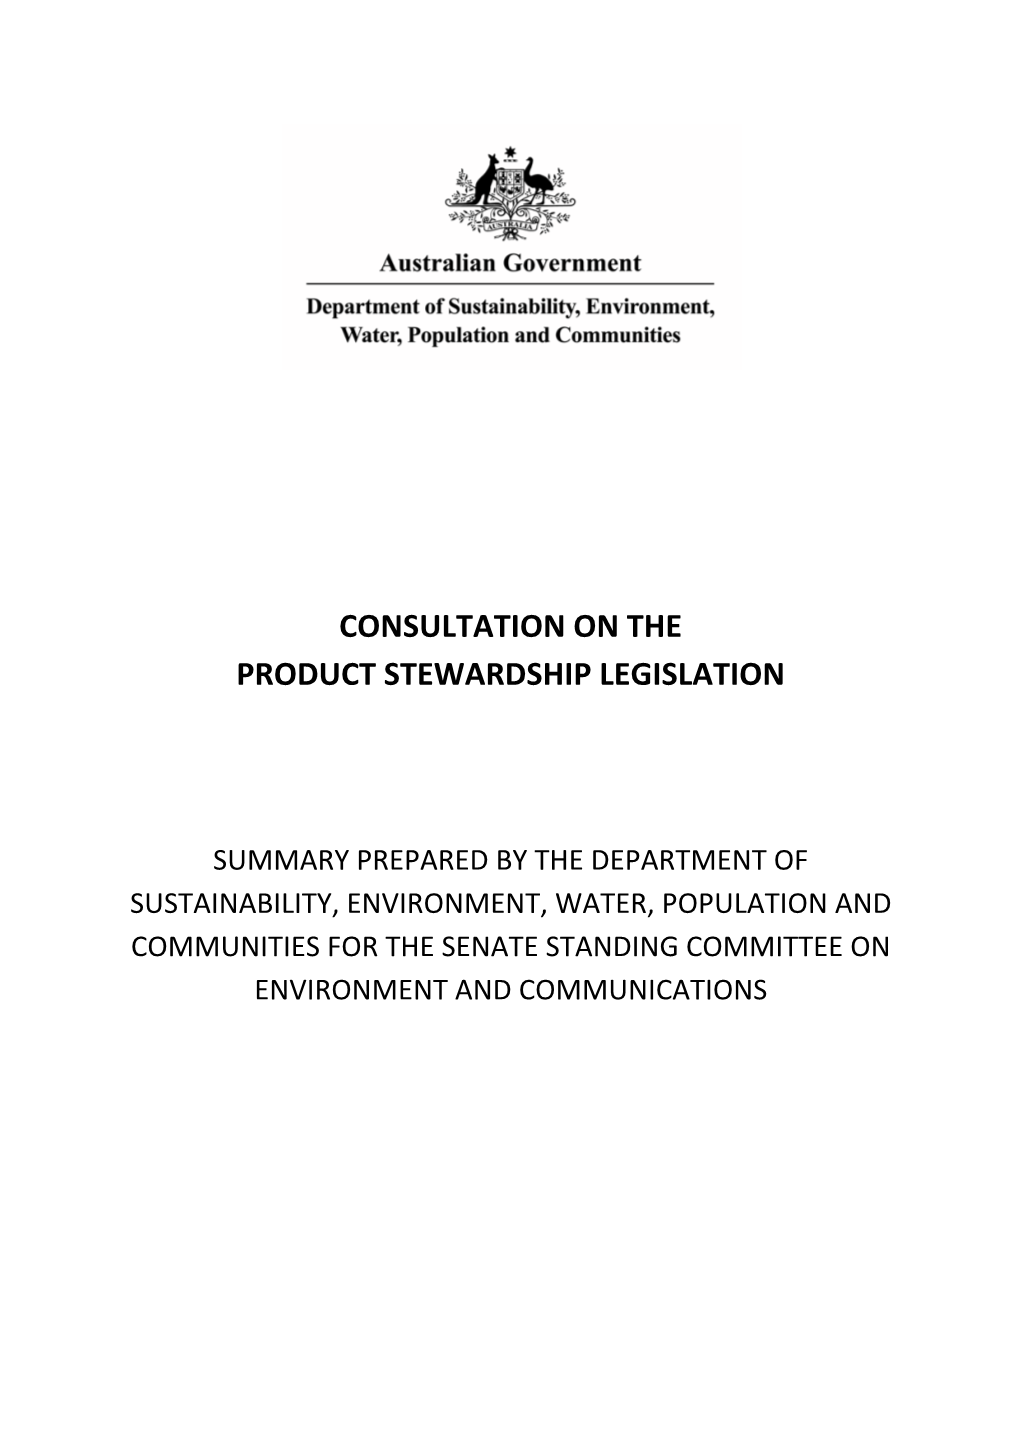 Consultation on the Product Stewardship Legislation